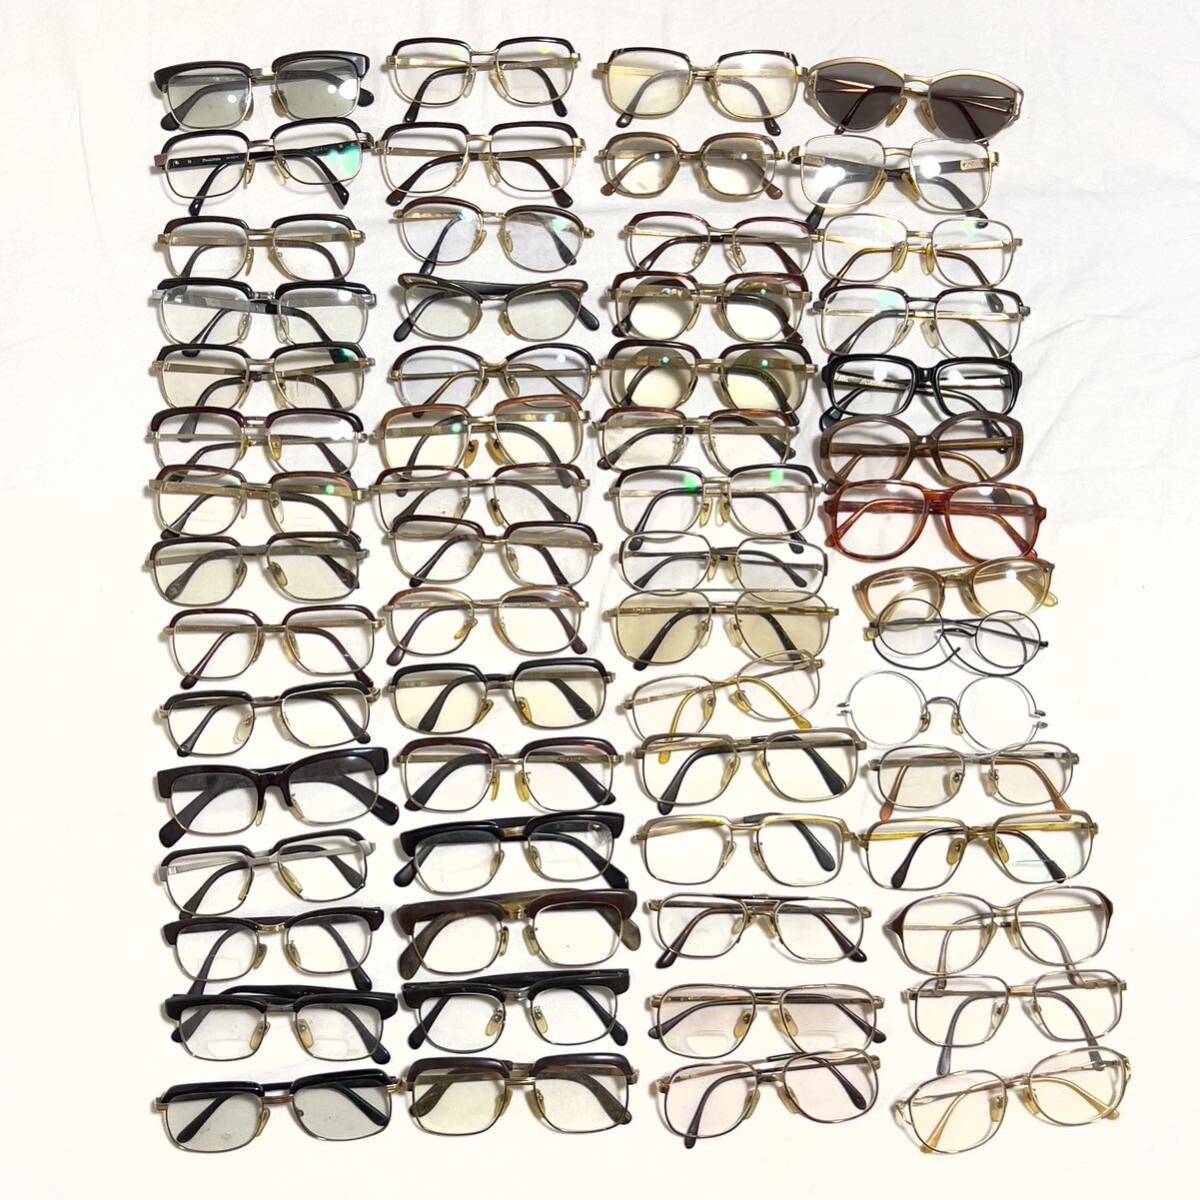 ヴィンテージ メガネ 眼鏡フレーム60点まとめ売り まとめて 大量 ローデンストック マルヴィッツ シャルマン等 サーモント 鼈甲 べっ甲の画像1